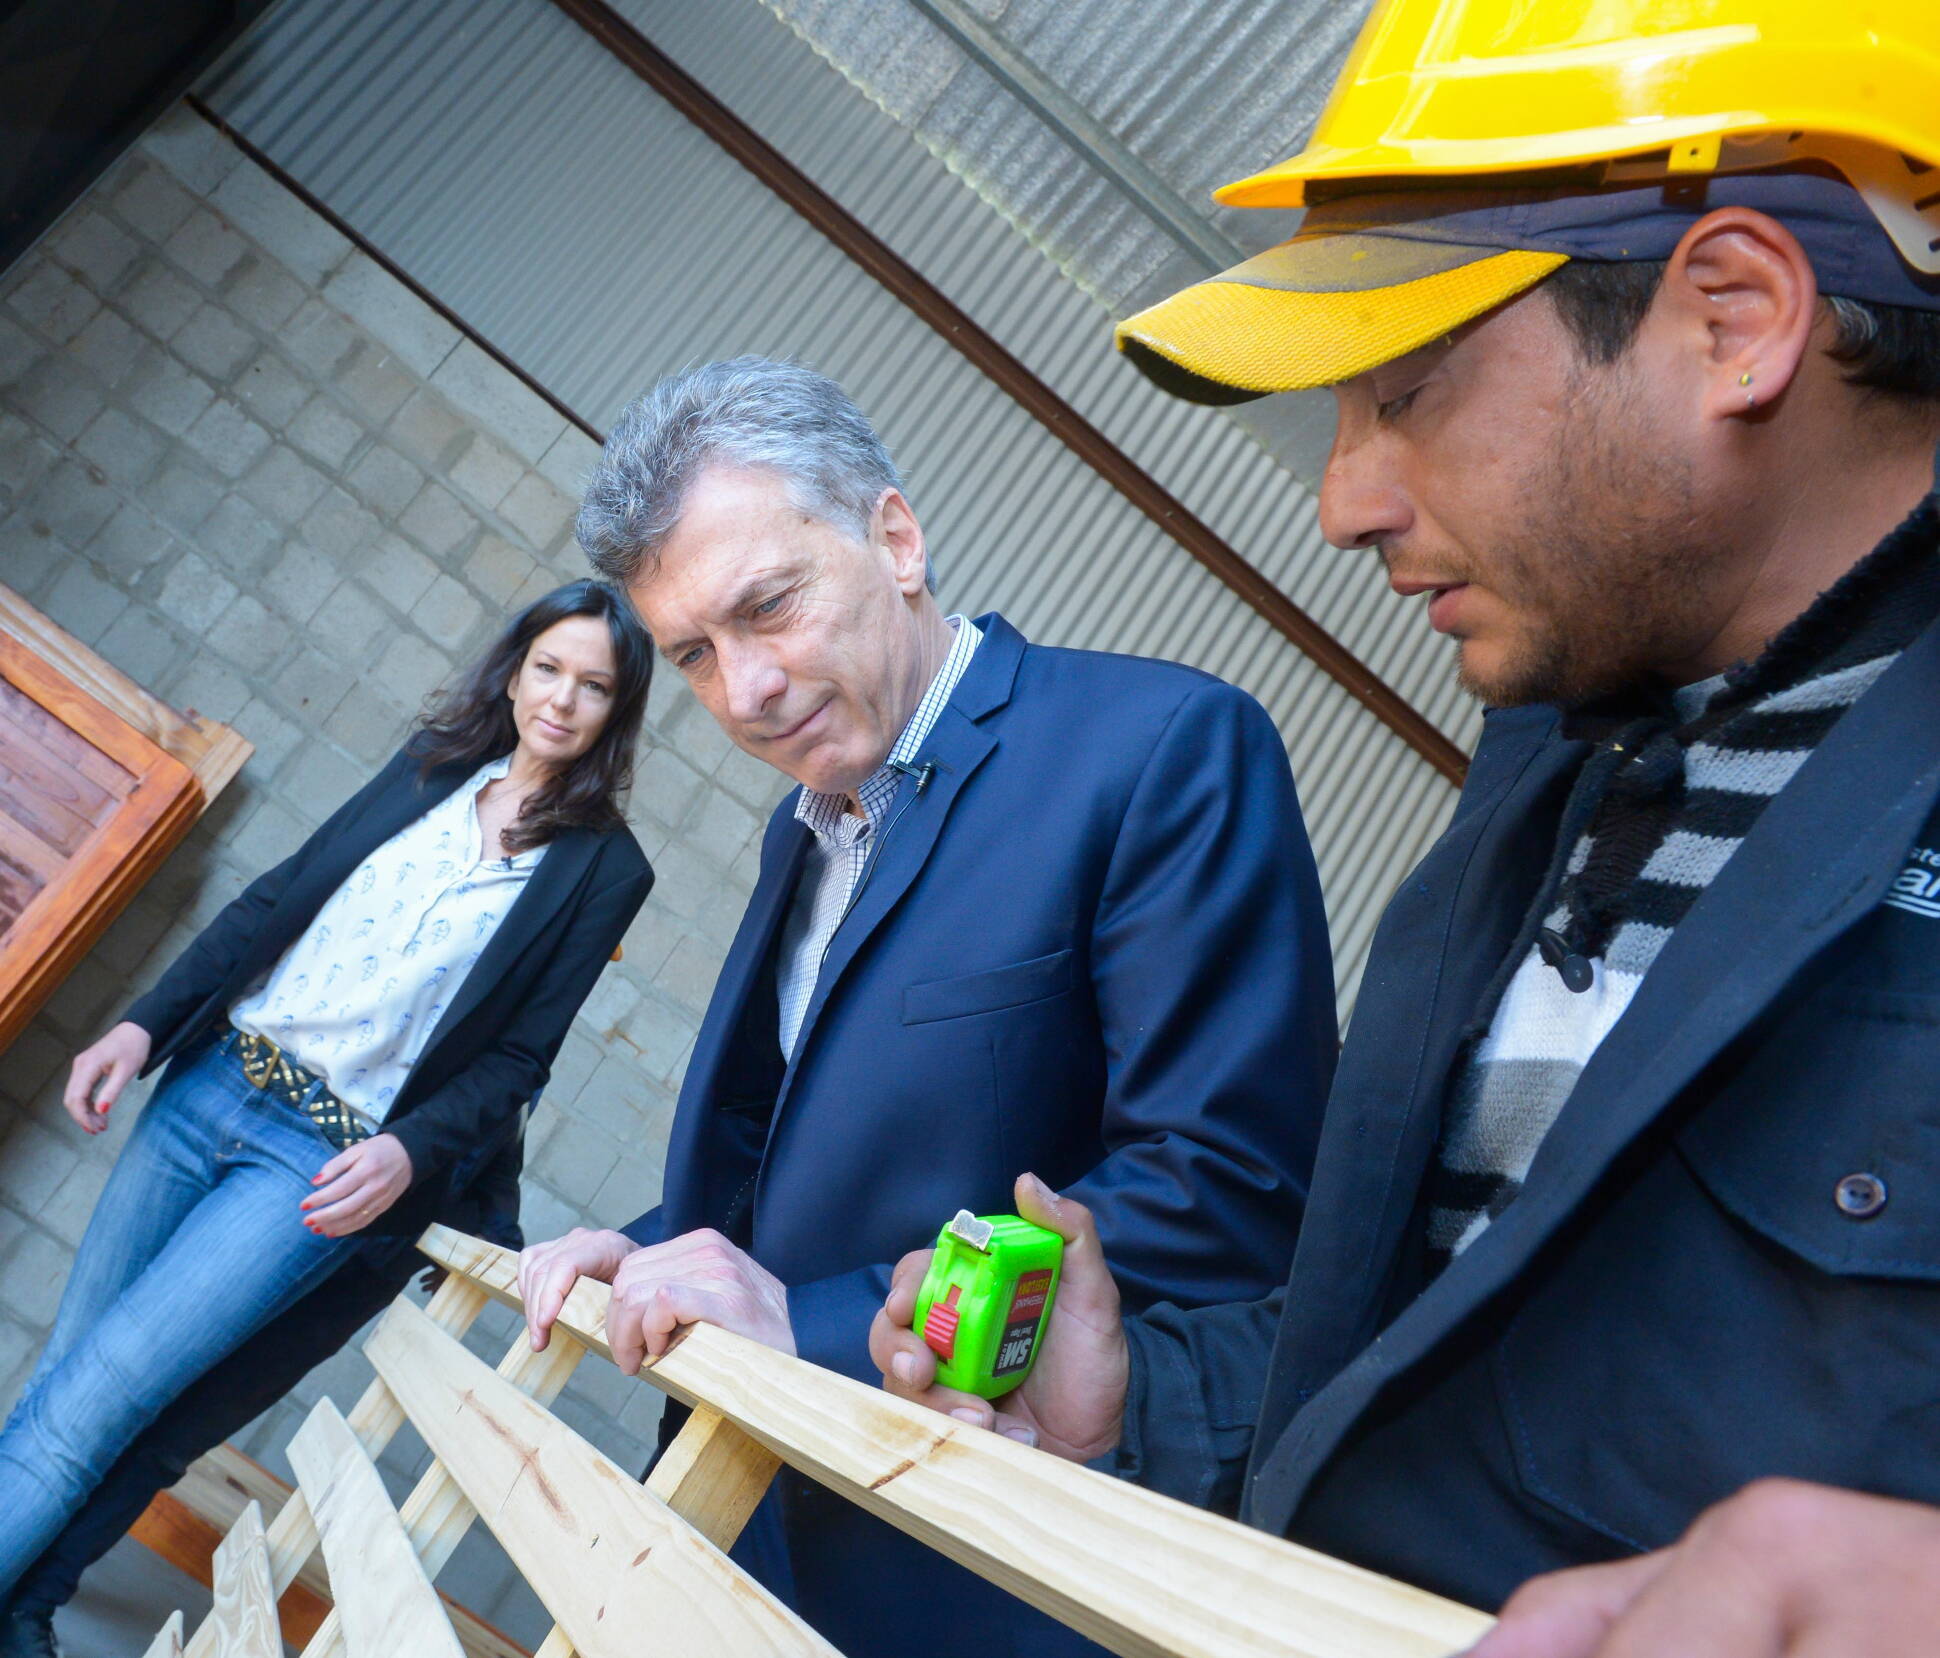 El presidente Macri visitó el Polo Productivo de Ezeiza